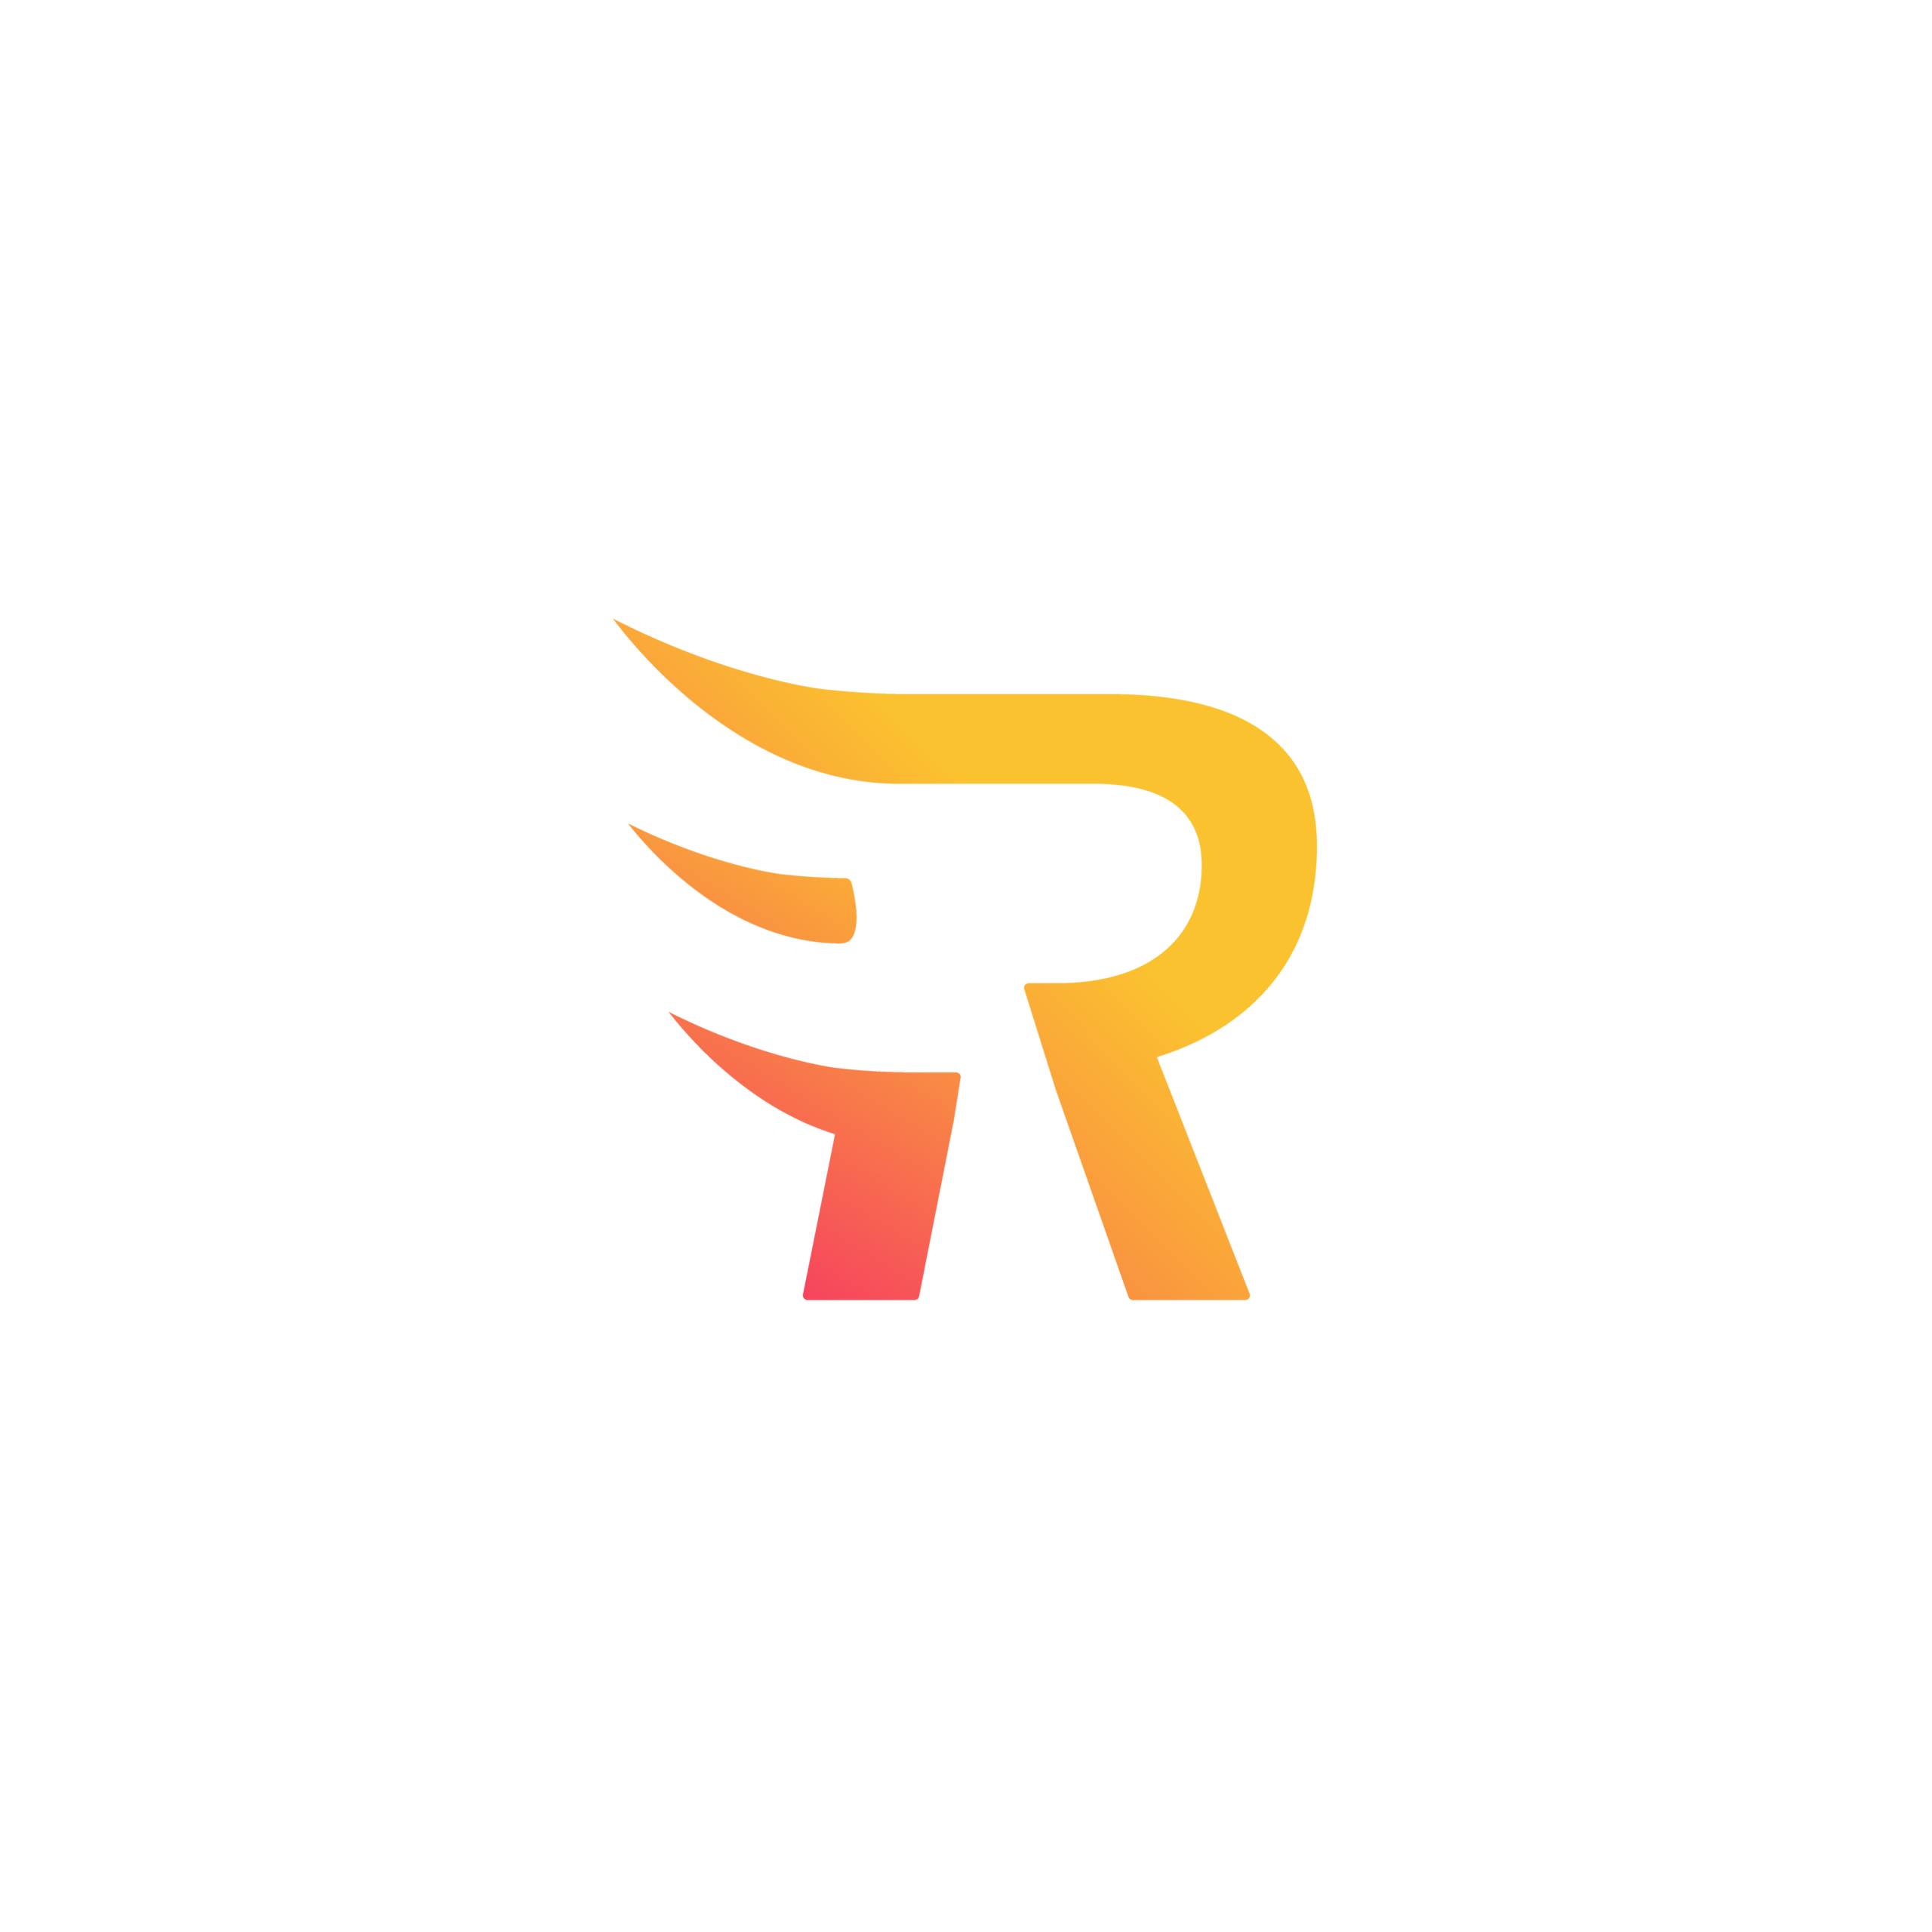 logo réathlétik center salle de préparation physique et de réathlétisation